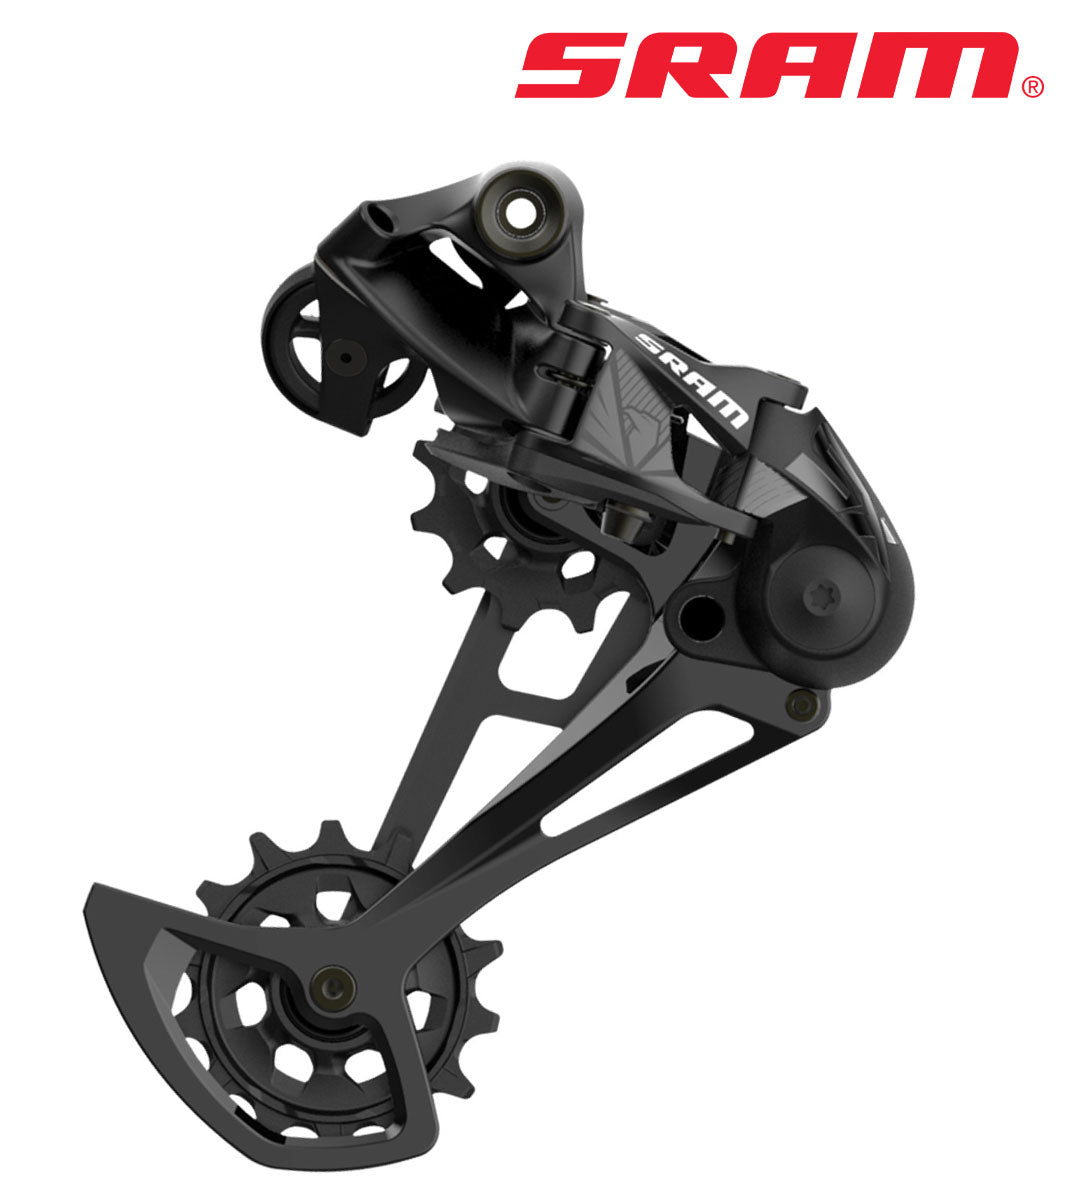 SRAM SX EAGLE 12-fach Schaltwerk langer Käfig - Premium Bikeshop